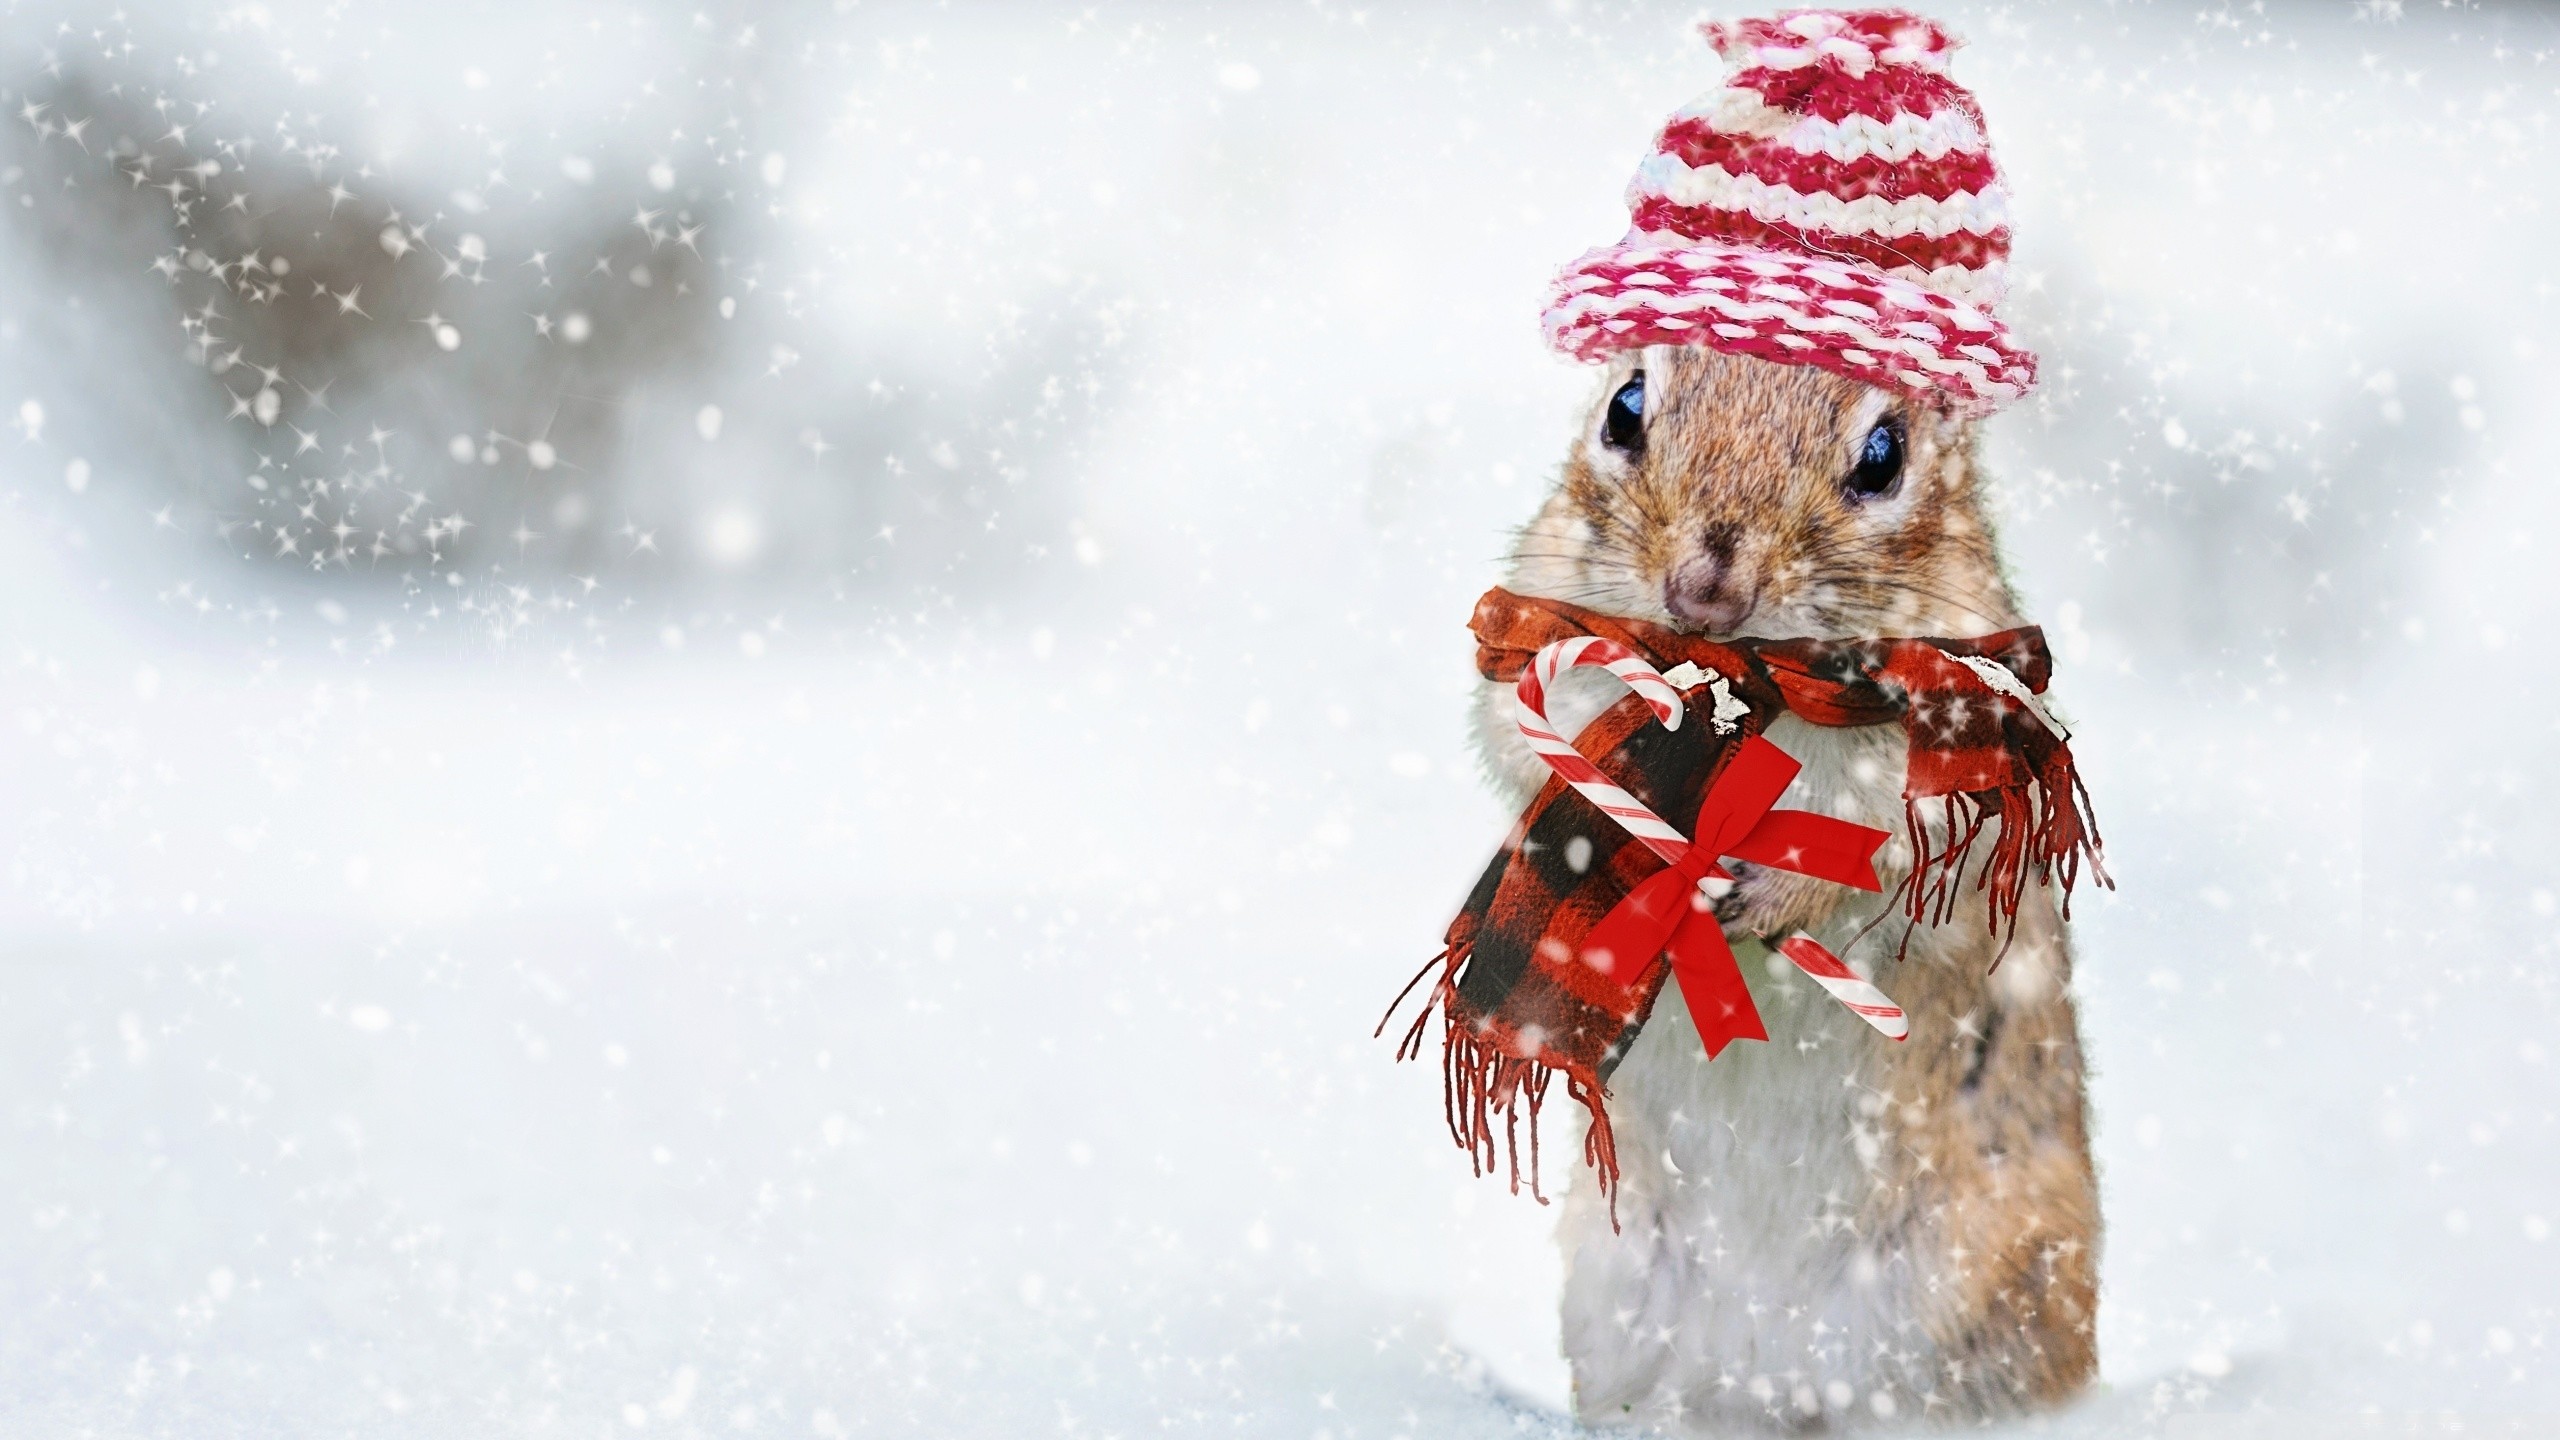 والپیپر فوق العاده قشنگ از سنجاب زیبا در زمستان با کلاه و شال قرمز